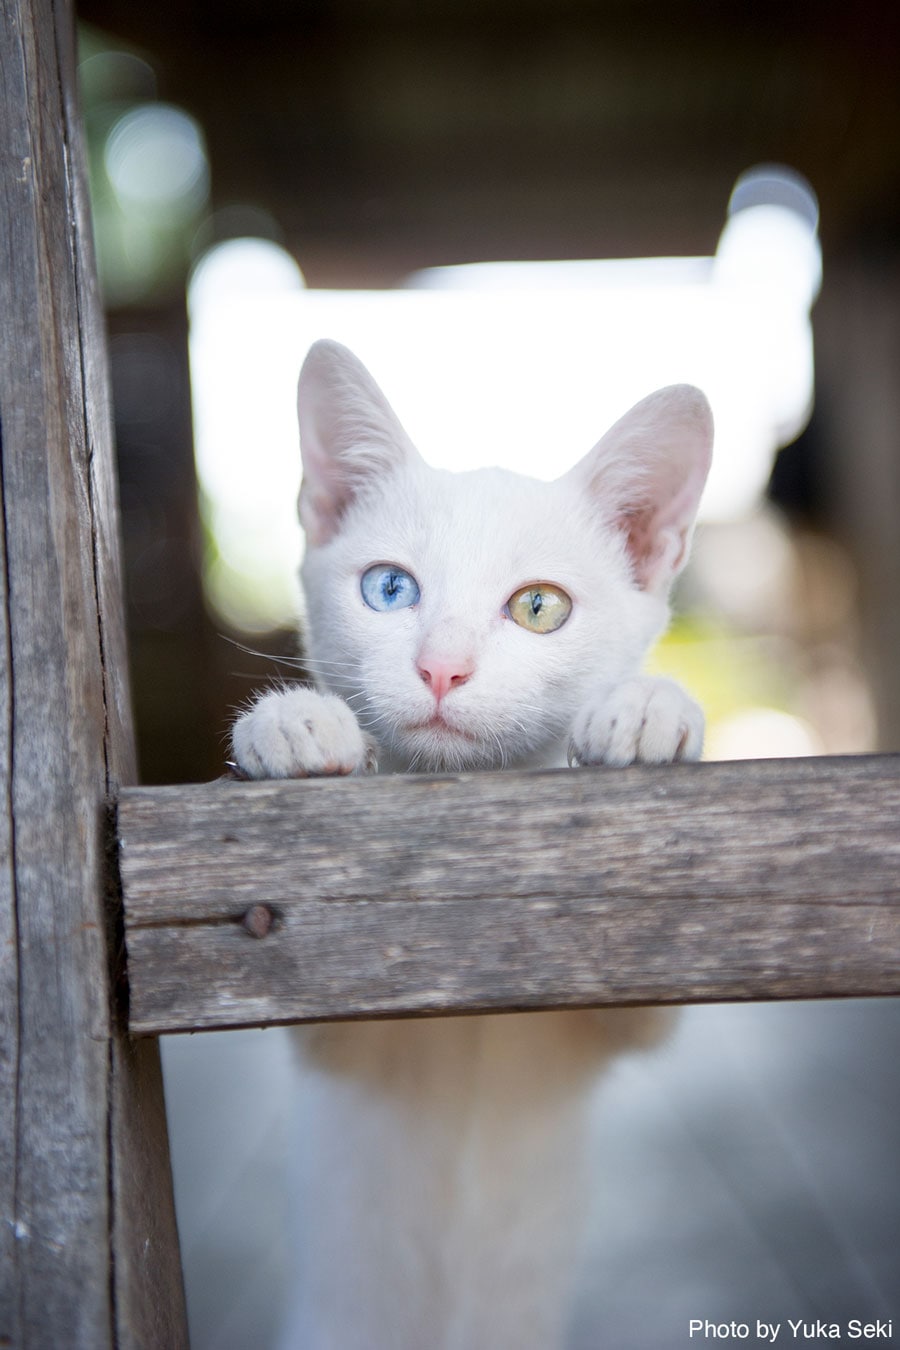 【ねこ助篇】オッドアイの白猫ちゃん。2009年12月、ラオスで撮影。